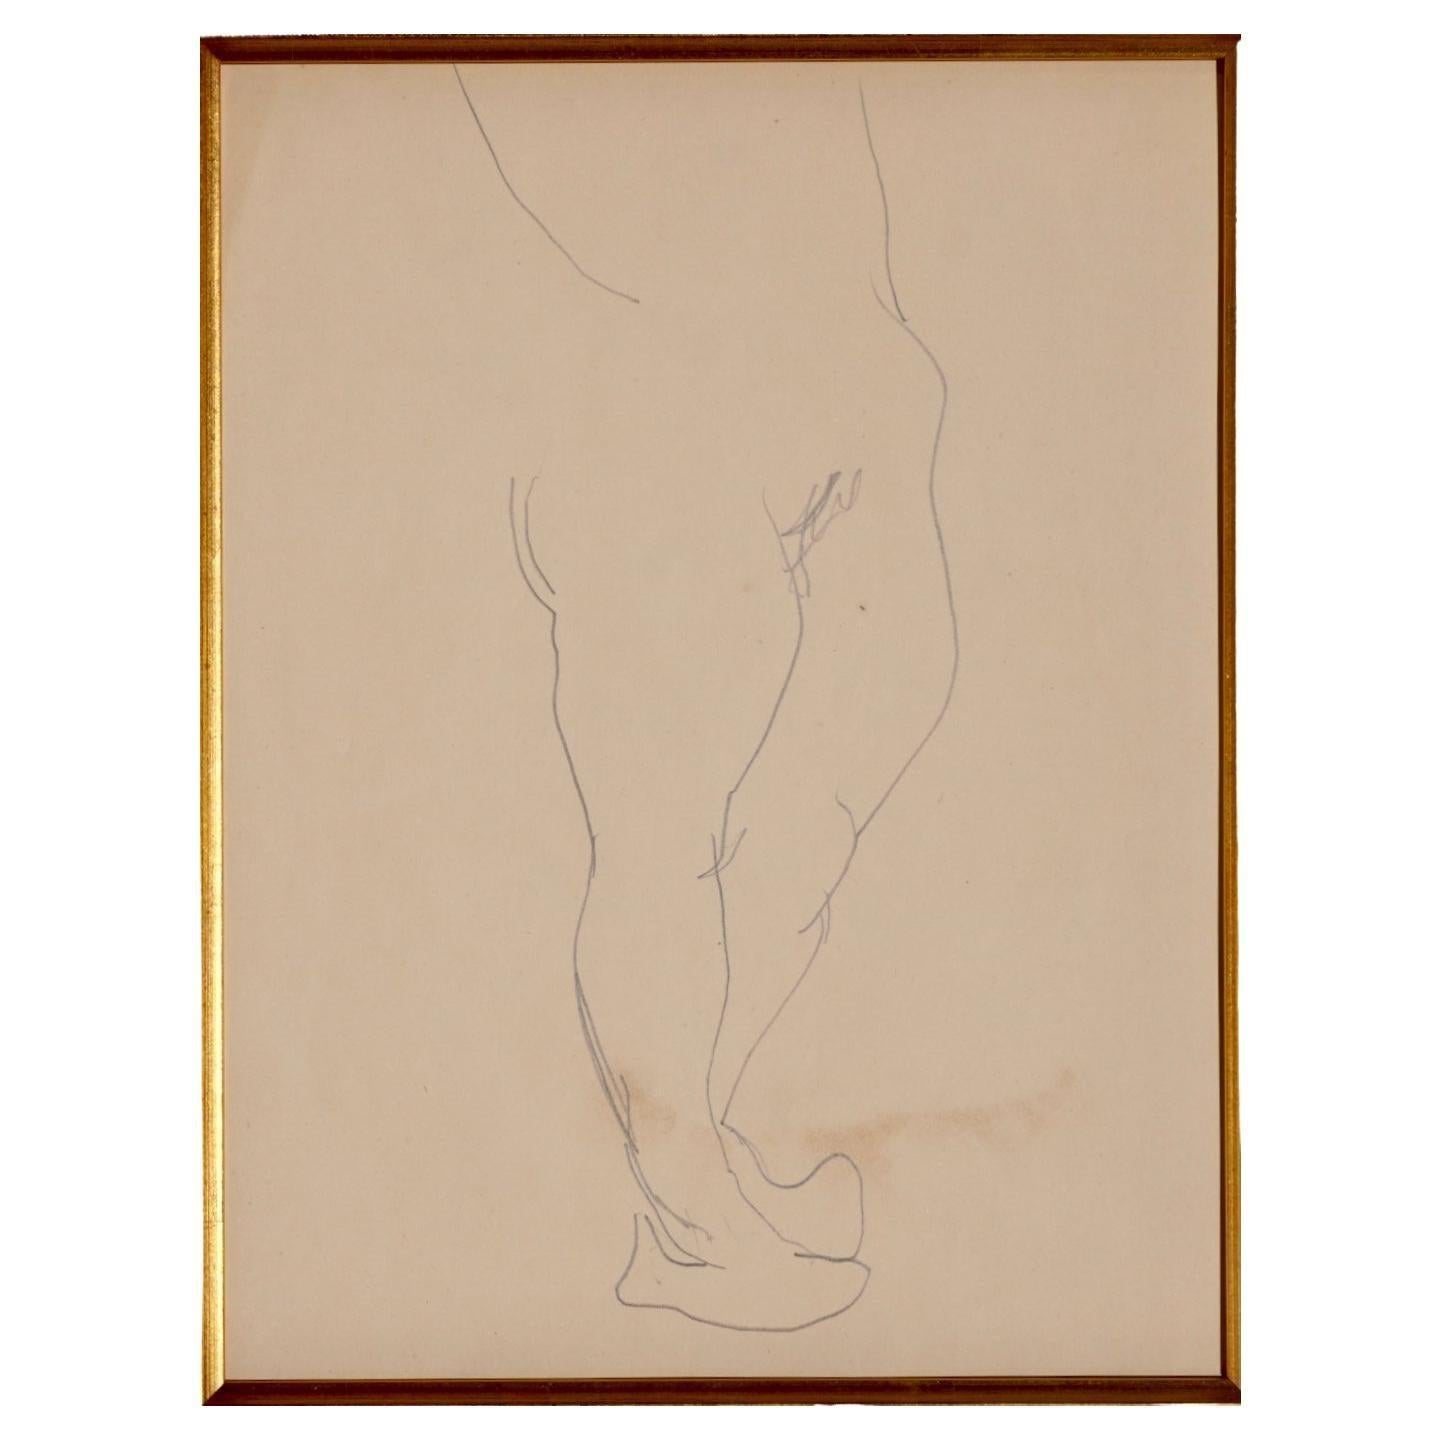 Henri Matisse (Französisch 1869-1954) Bleistiftzeichnung eines nackten Torsos Katalogisiert als Nummer Z 542 im Künstlerarchiv  Bleistift auf Papier, um 1900.  

Blatt: 9 3/8 x 11 3/4 Zoll.  
Gerahmt: 22,5 x 25,5 Museumsrahmen und Glas  

Anmerkung: